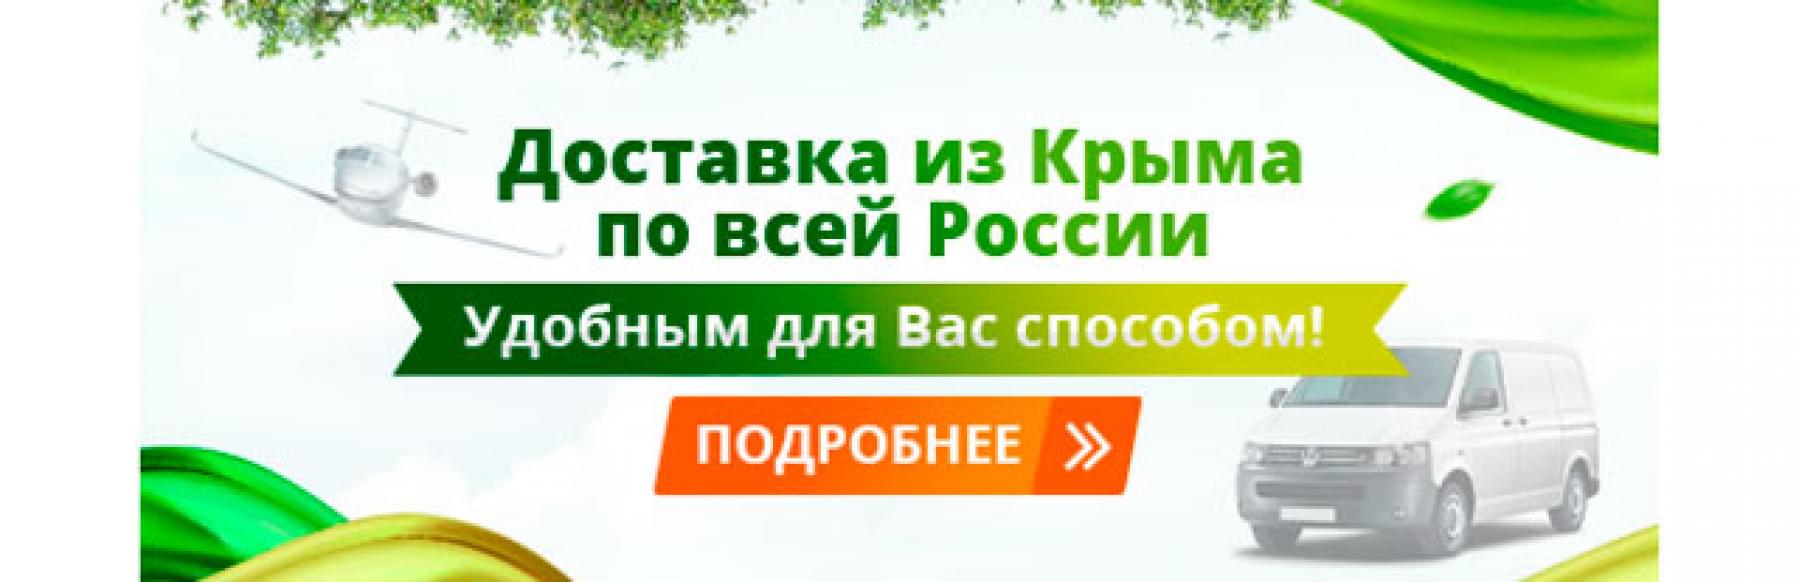 Крымская Косметика Интернет Магазин Москва Официальный Сайт